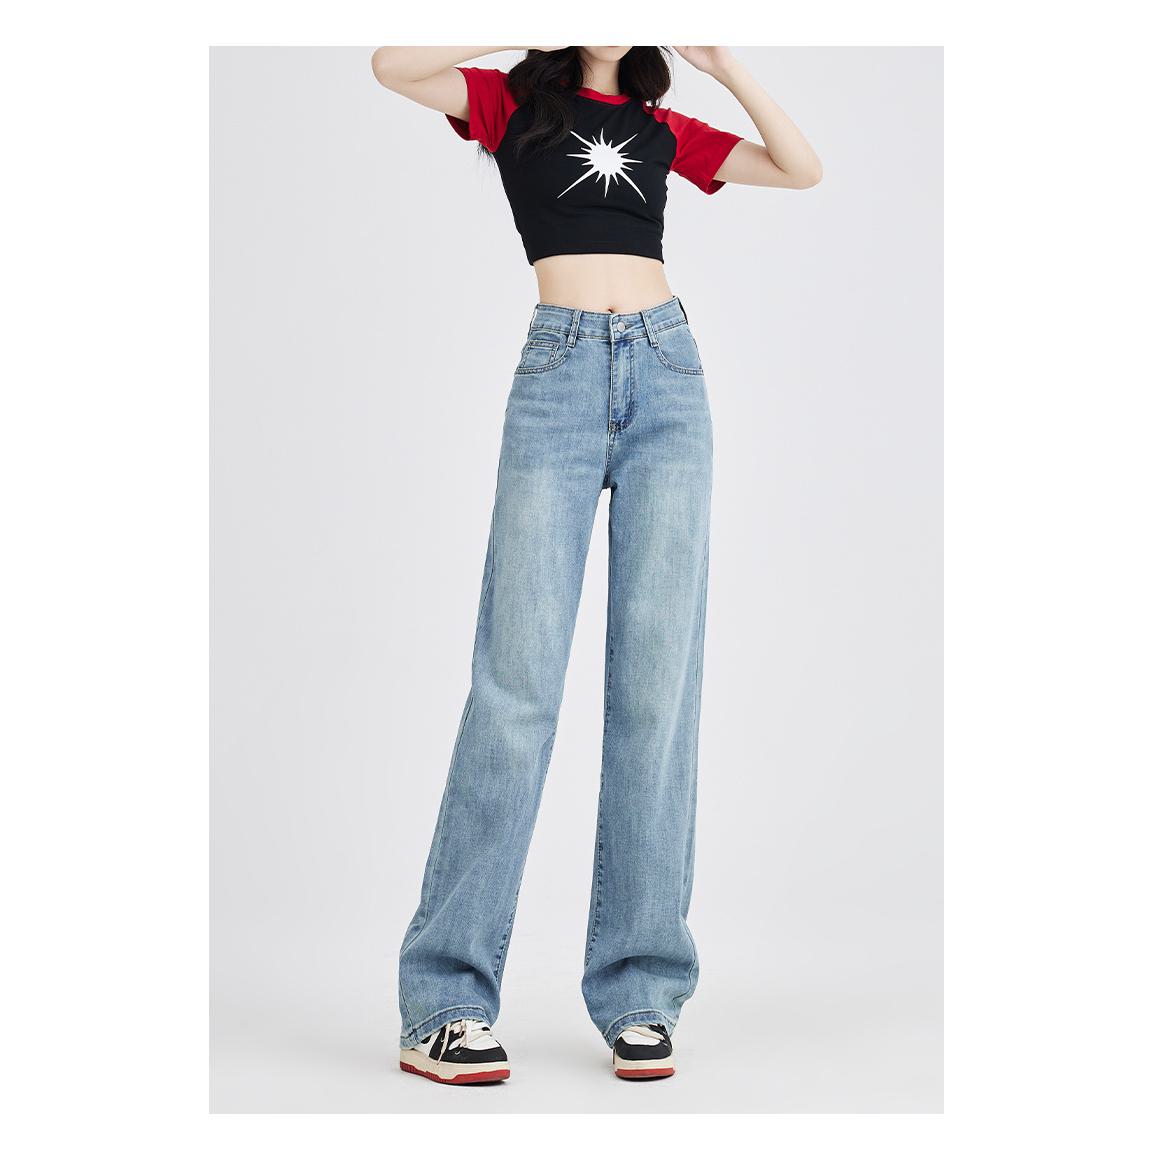 Jeans mit hoher Taille, geradem Bein, bodenlanger Länge, weich, schlankmachend, dünn und schlicht.